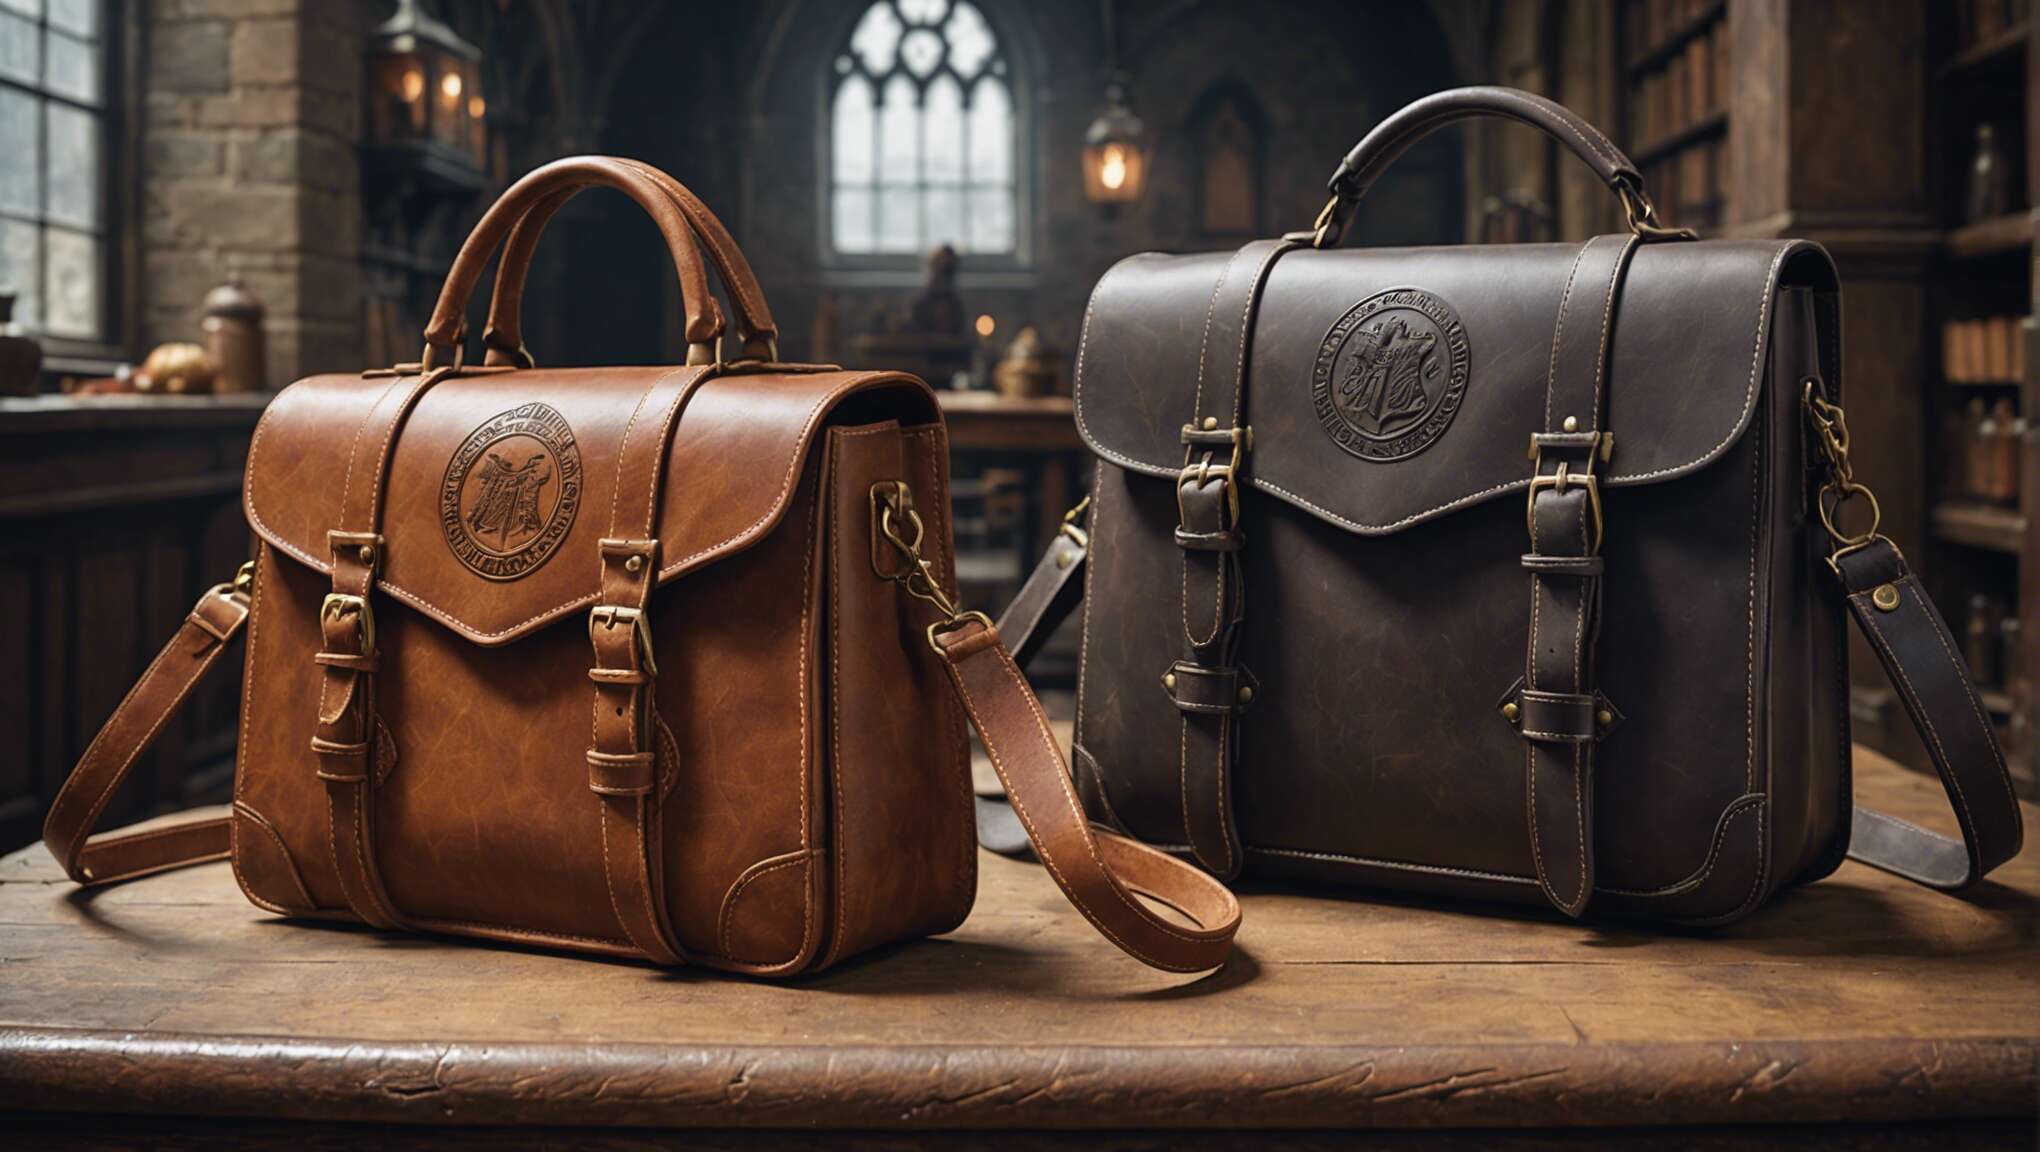 Cuir végan vs traditionnel : quel choix pour un sac durable façon Harry Potter ?